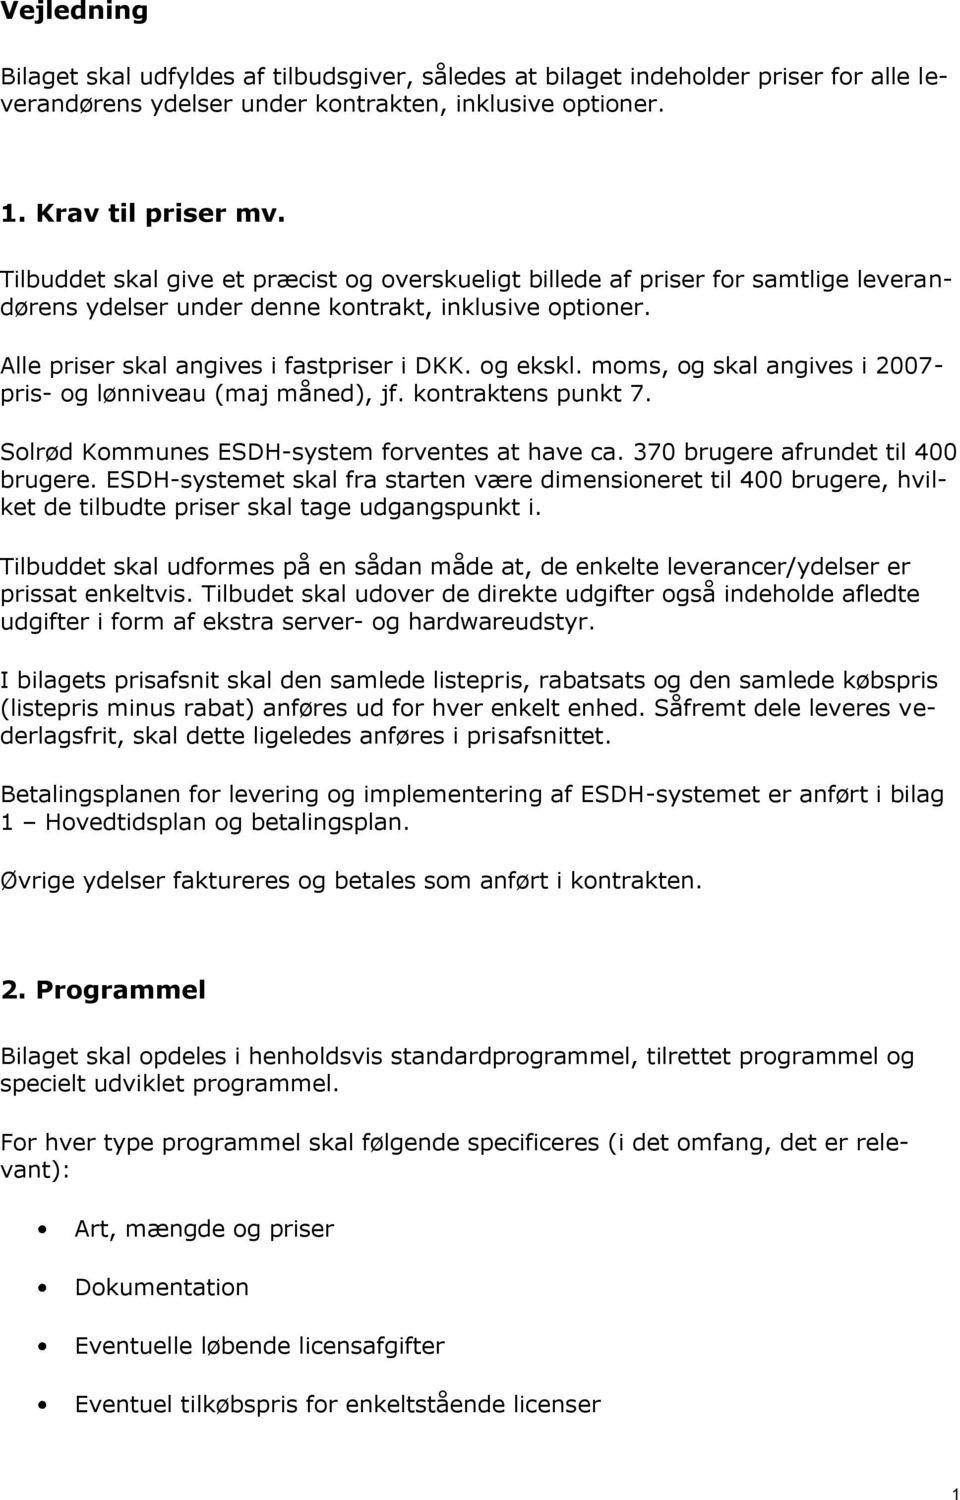 moms, og skal angives i 2007- pris- og lønniveau (maj måned), jf. kontraktens punkt 7. Solrød Kommunes ESDH-system forventes at have ca. 370 brugere afrundet til 400 brugere.